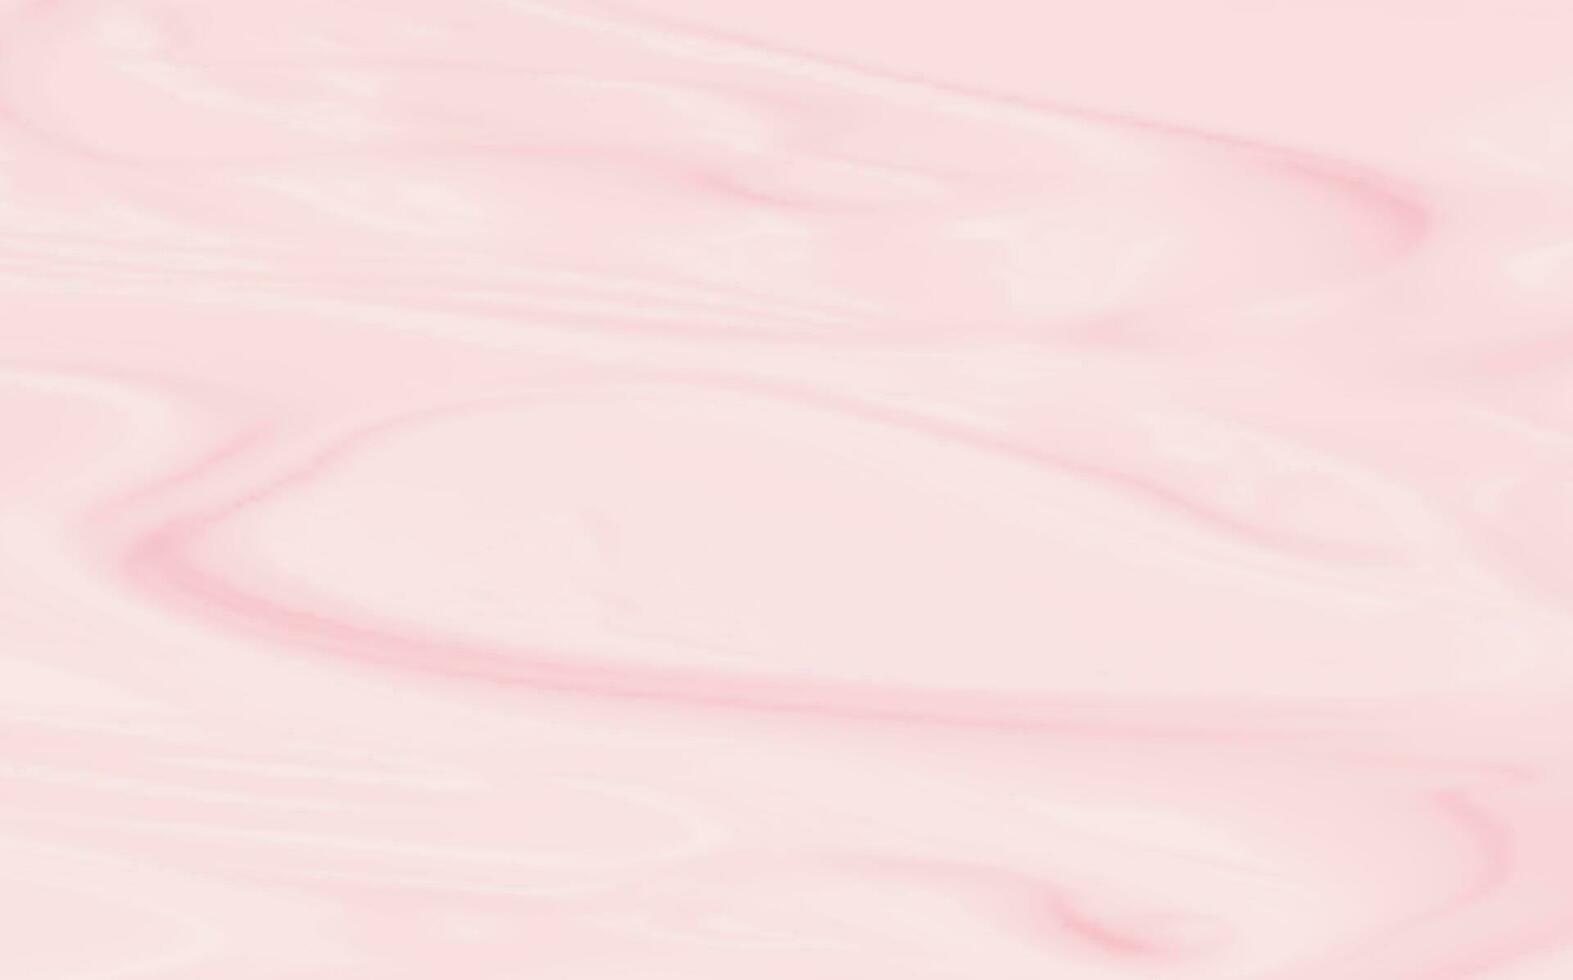 Rosa espalhando textura do creme, gelo creme ou gelo. luz fundo do morango sobremesa, geléia ou confeitaria creme. vetor